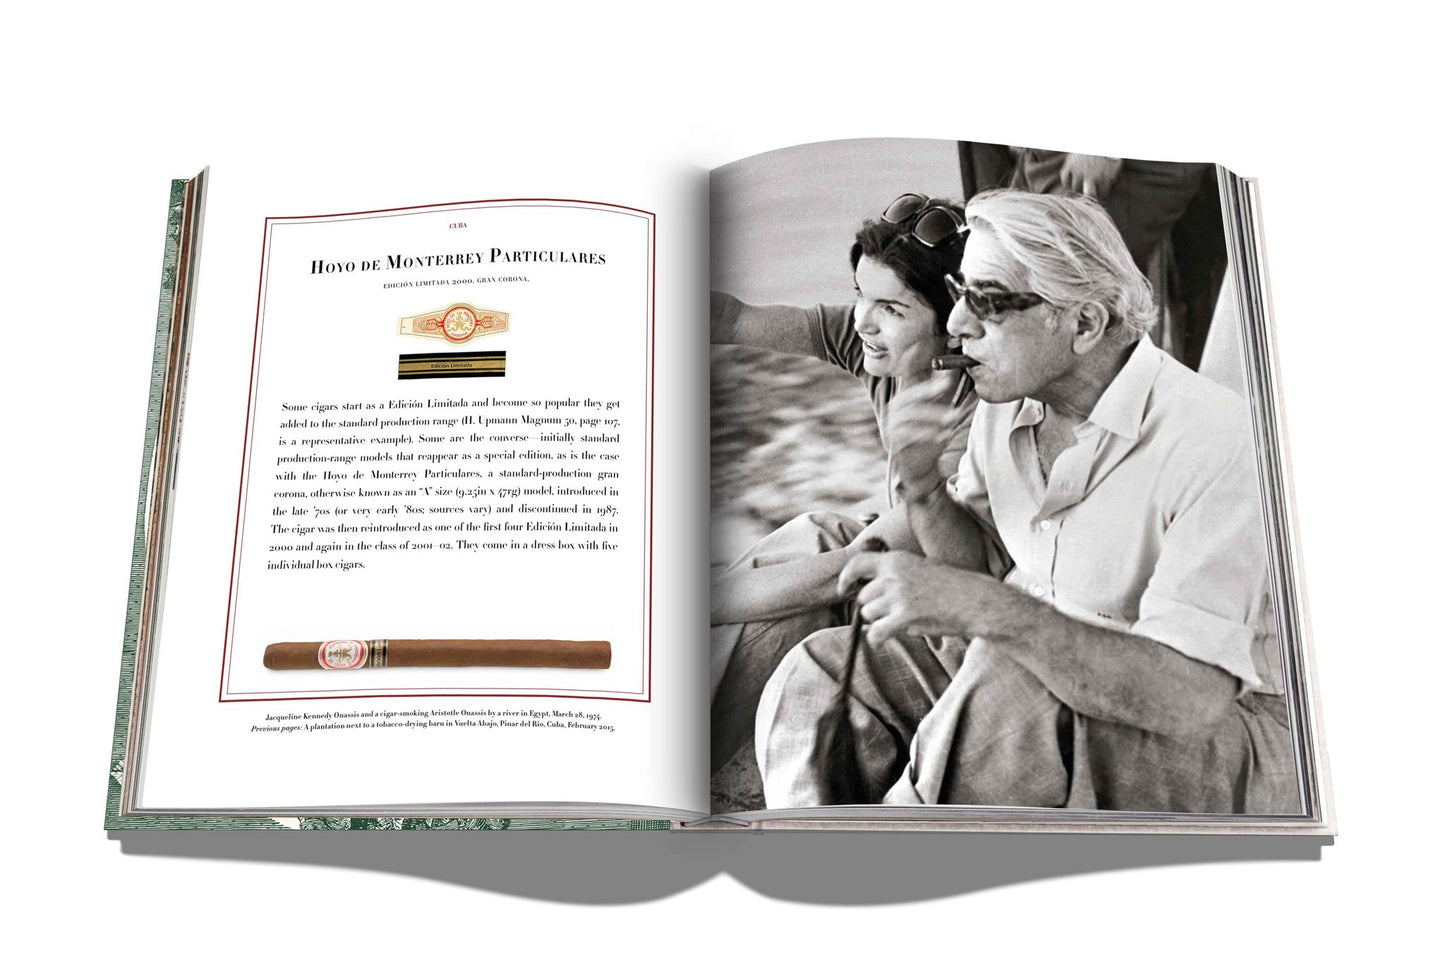 Buch Zigarren: Unmögliche Sammlung